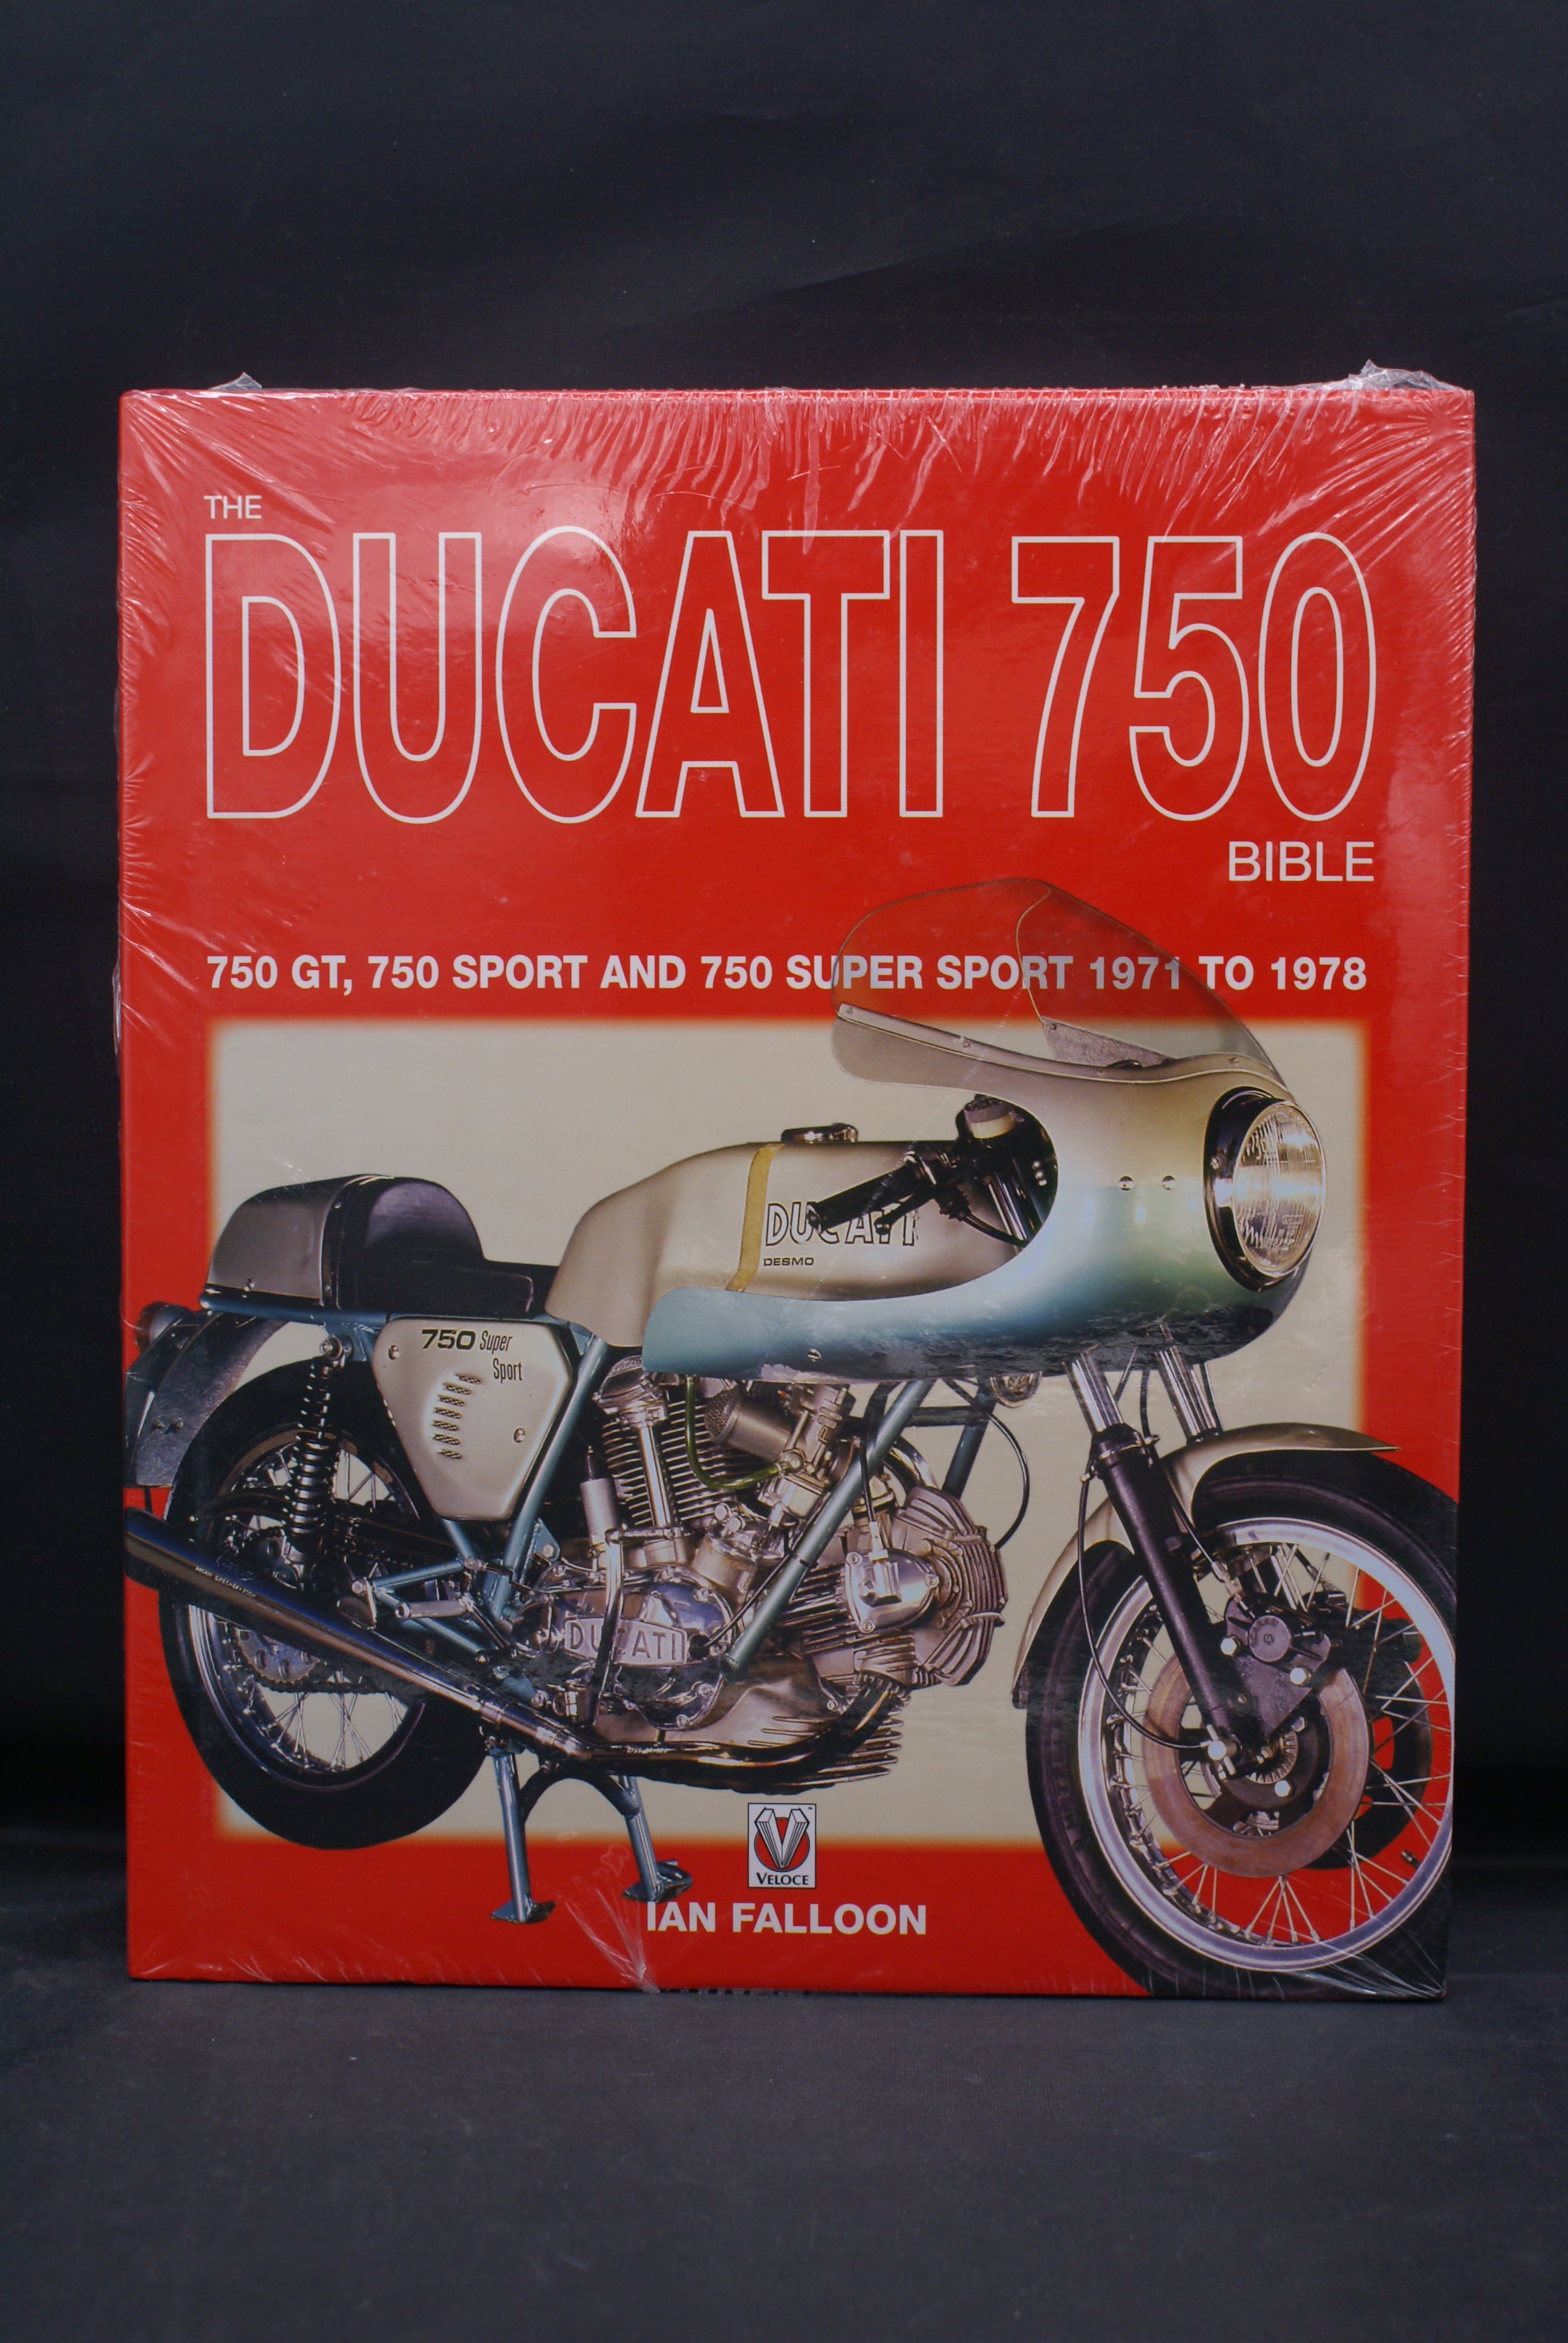 Ducati 750 Bible